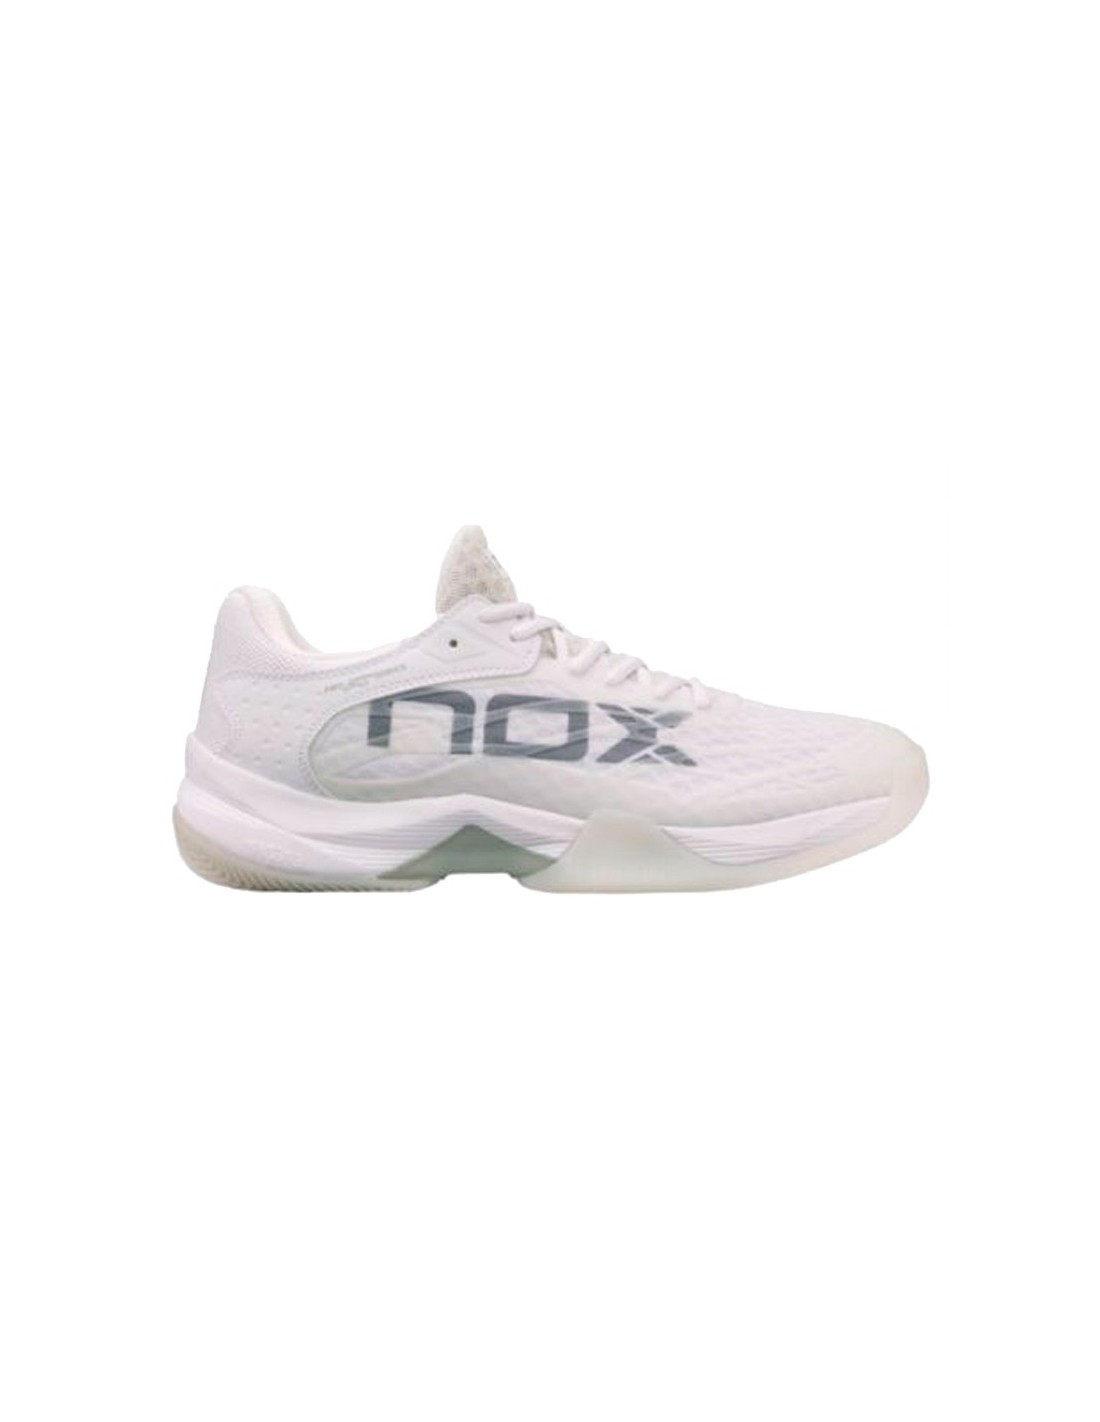 NOX AT10 LUX - PadelMania